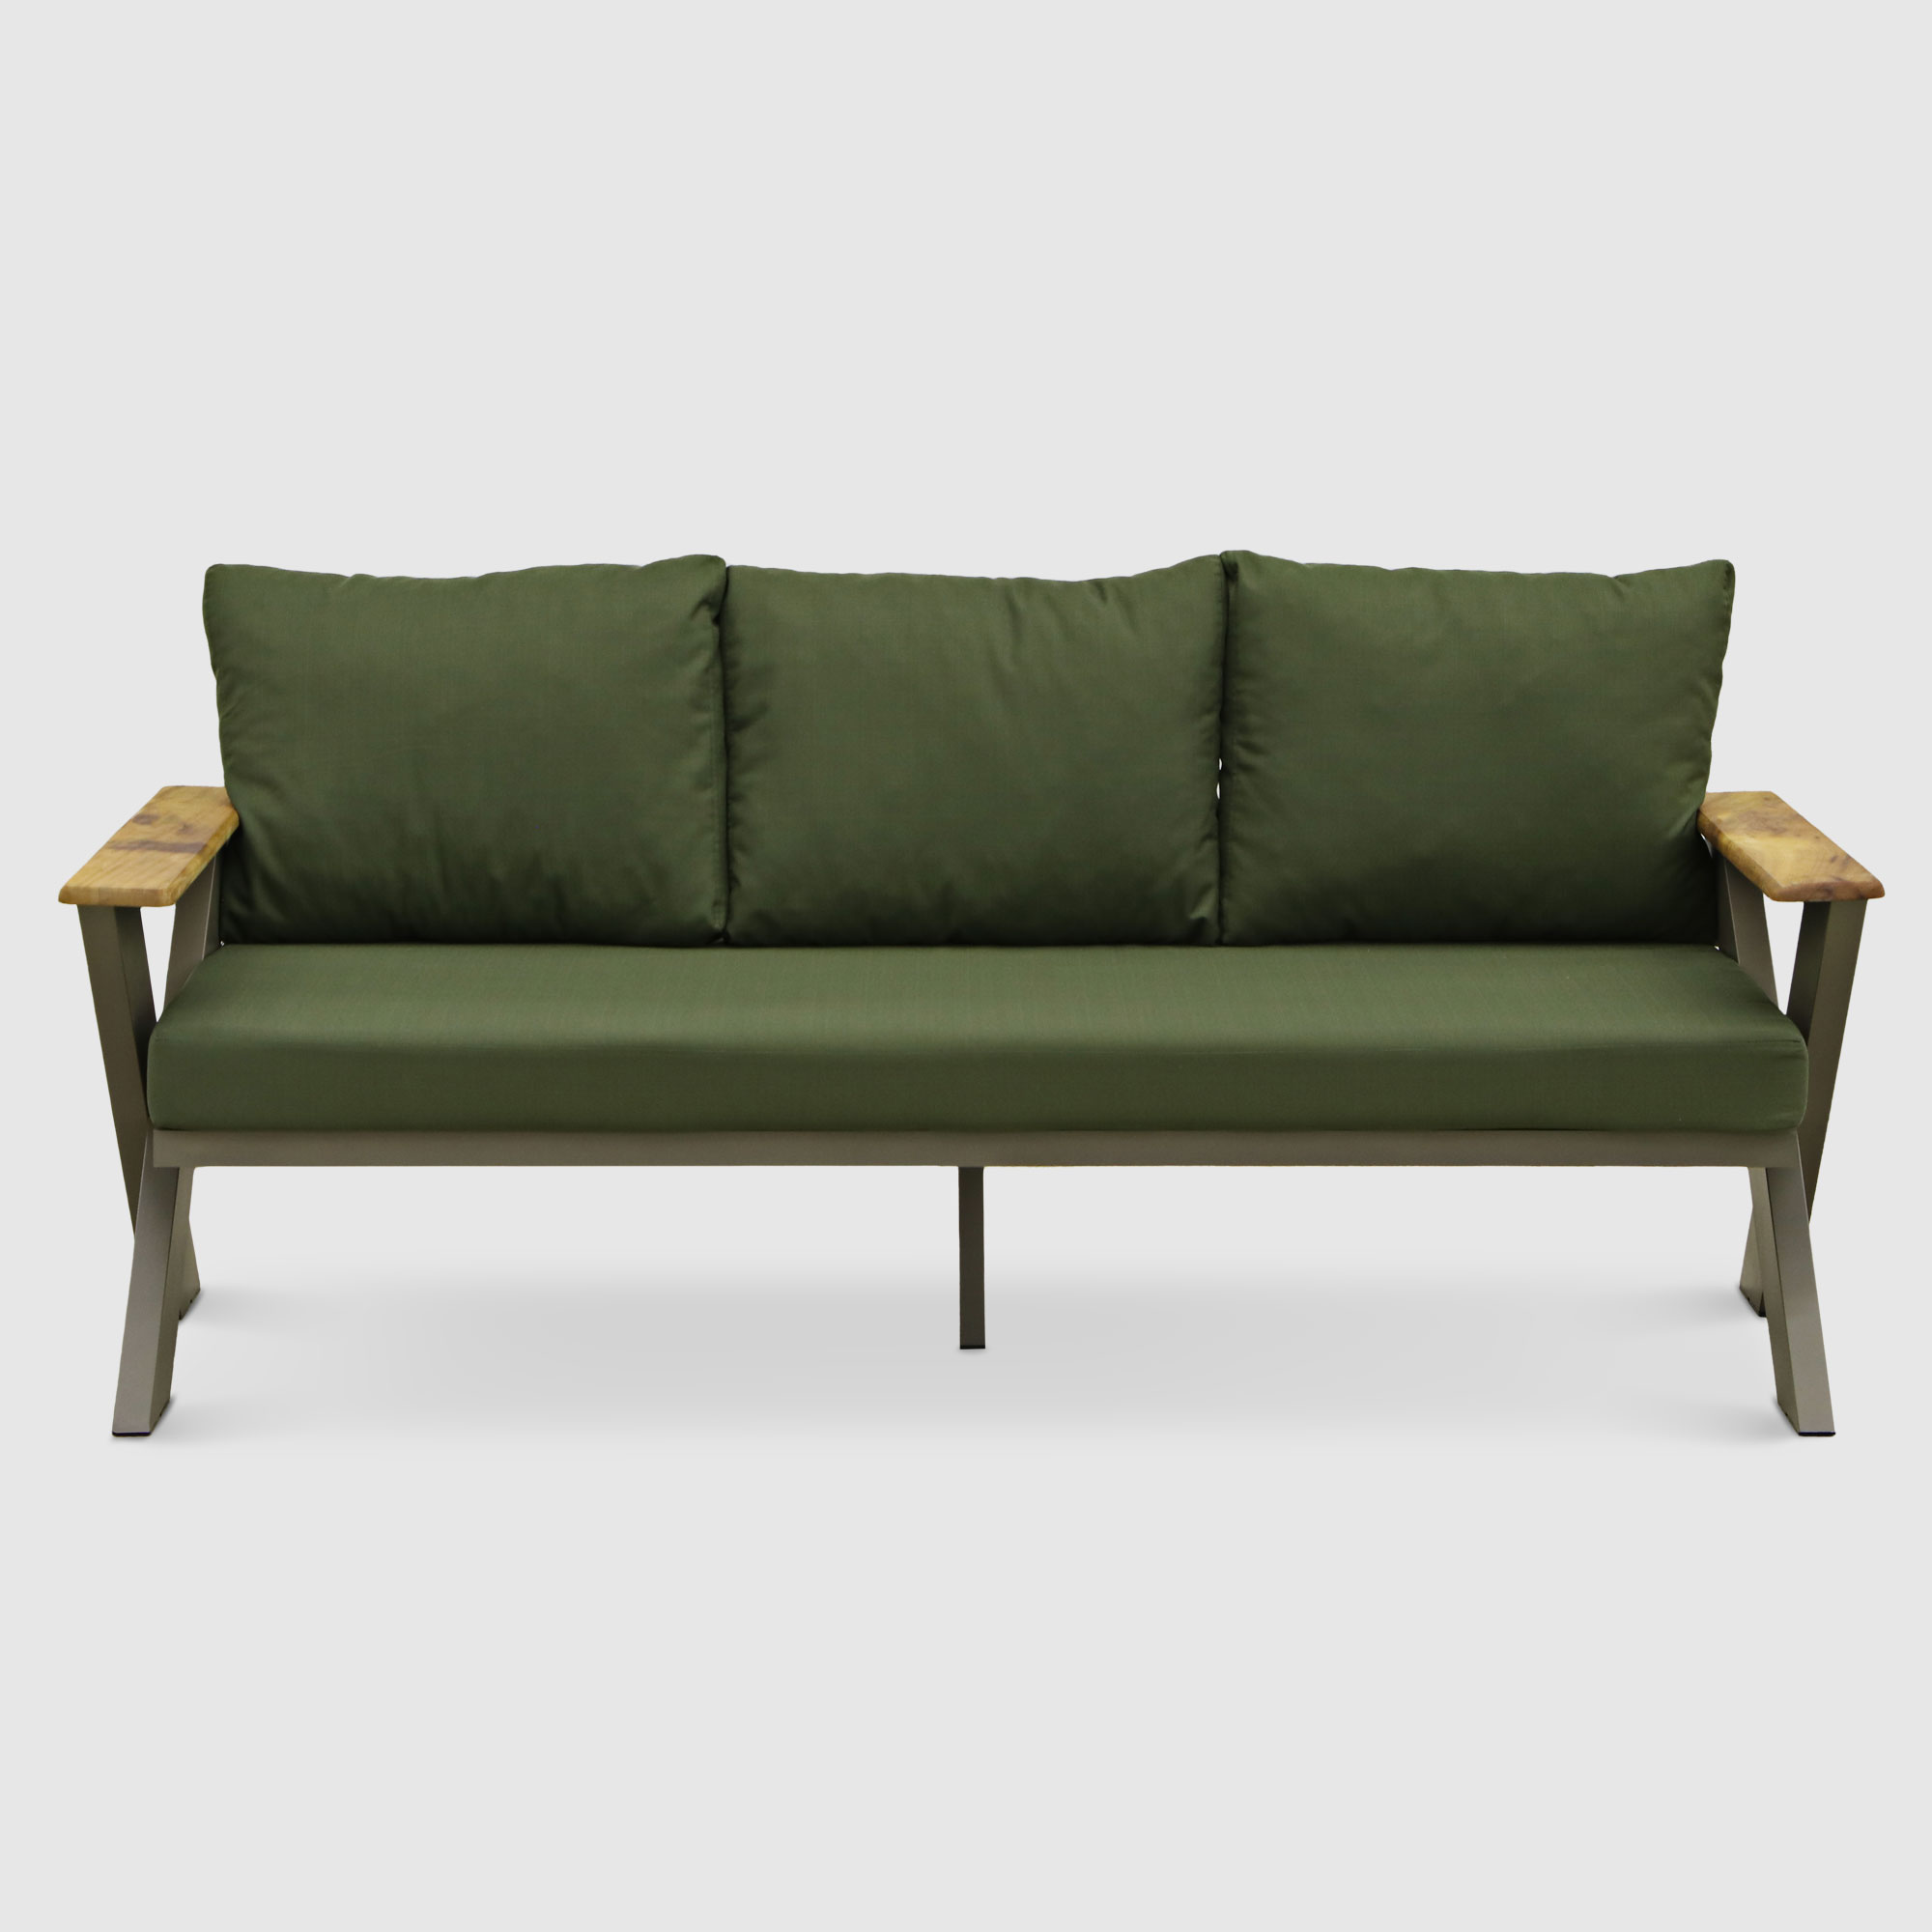 Комплект мебели Emek garden Toledo зеленый 4 предмета, цвет оливковый, размер 170х80х90 - фото 3